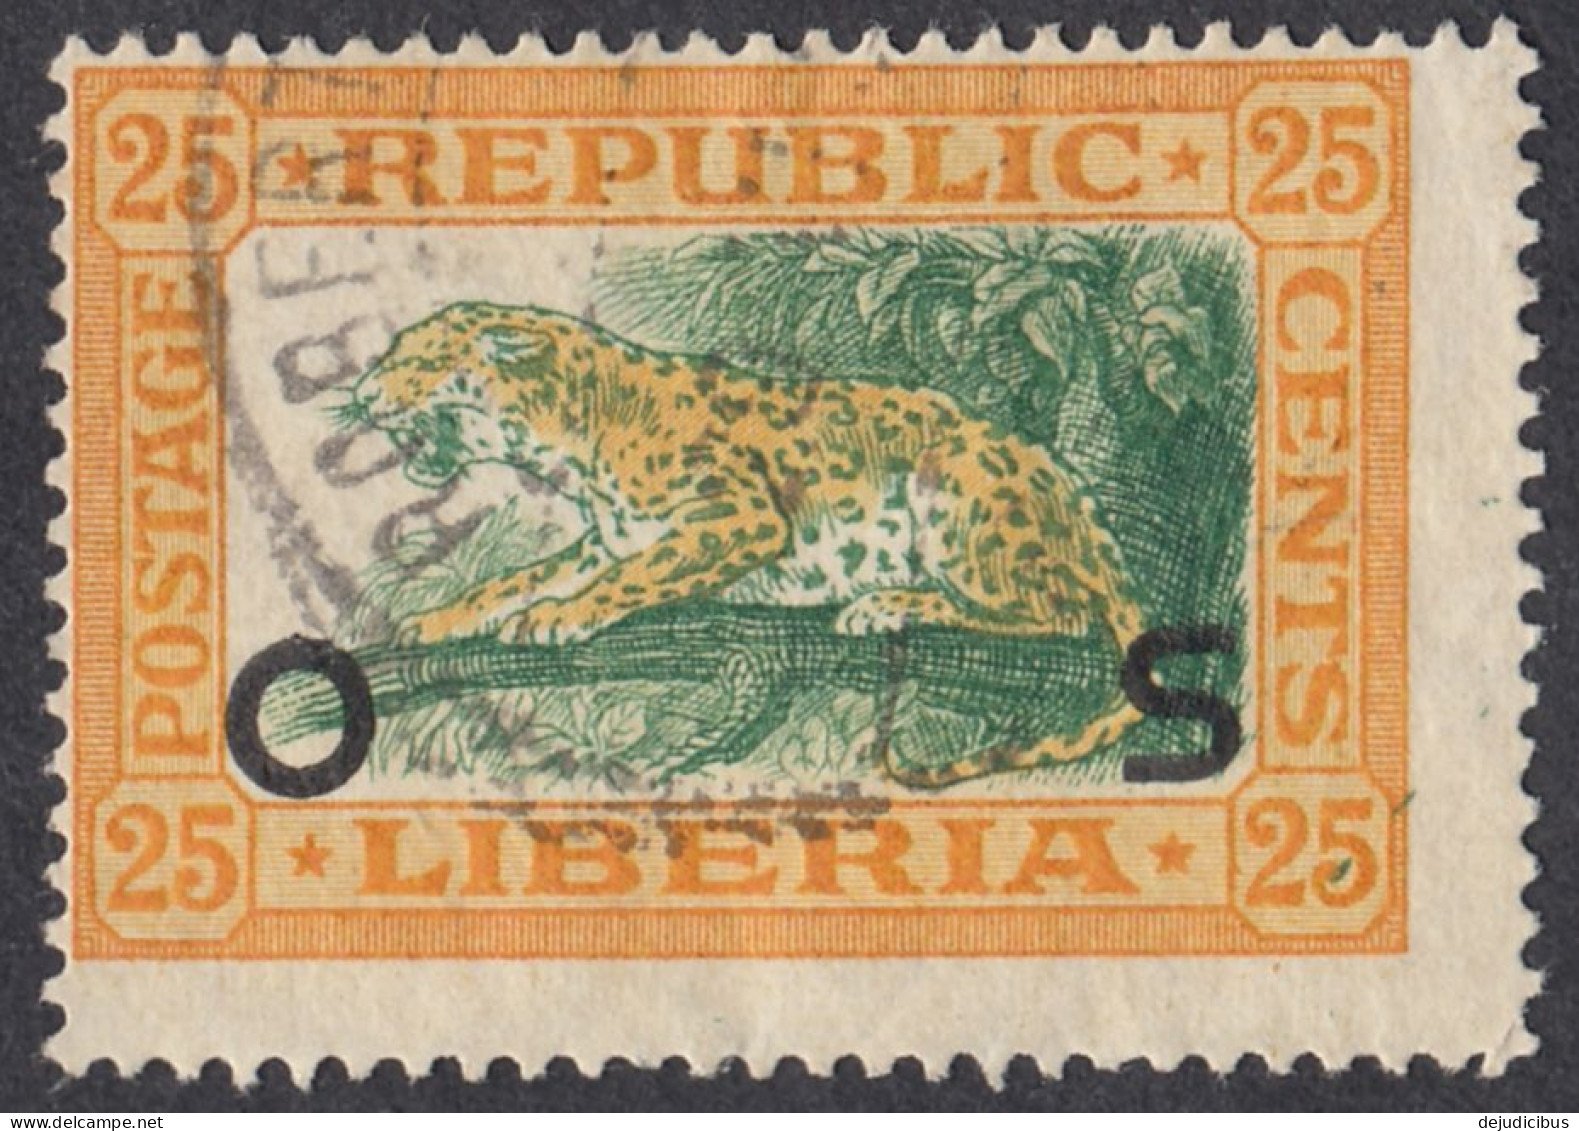 LIBERIA - 1921 -  Yvert Servizio 112 Usato. - Liberia